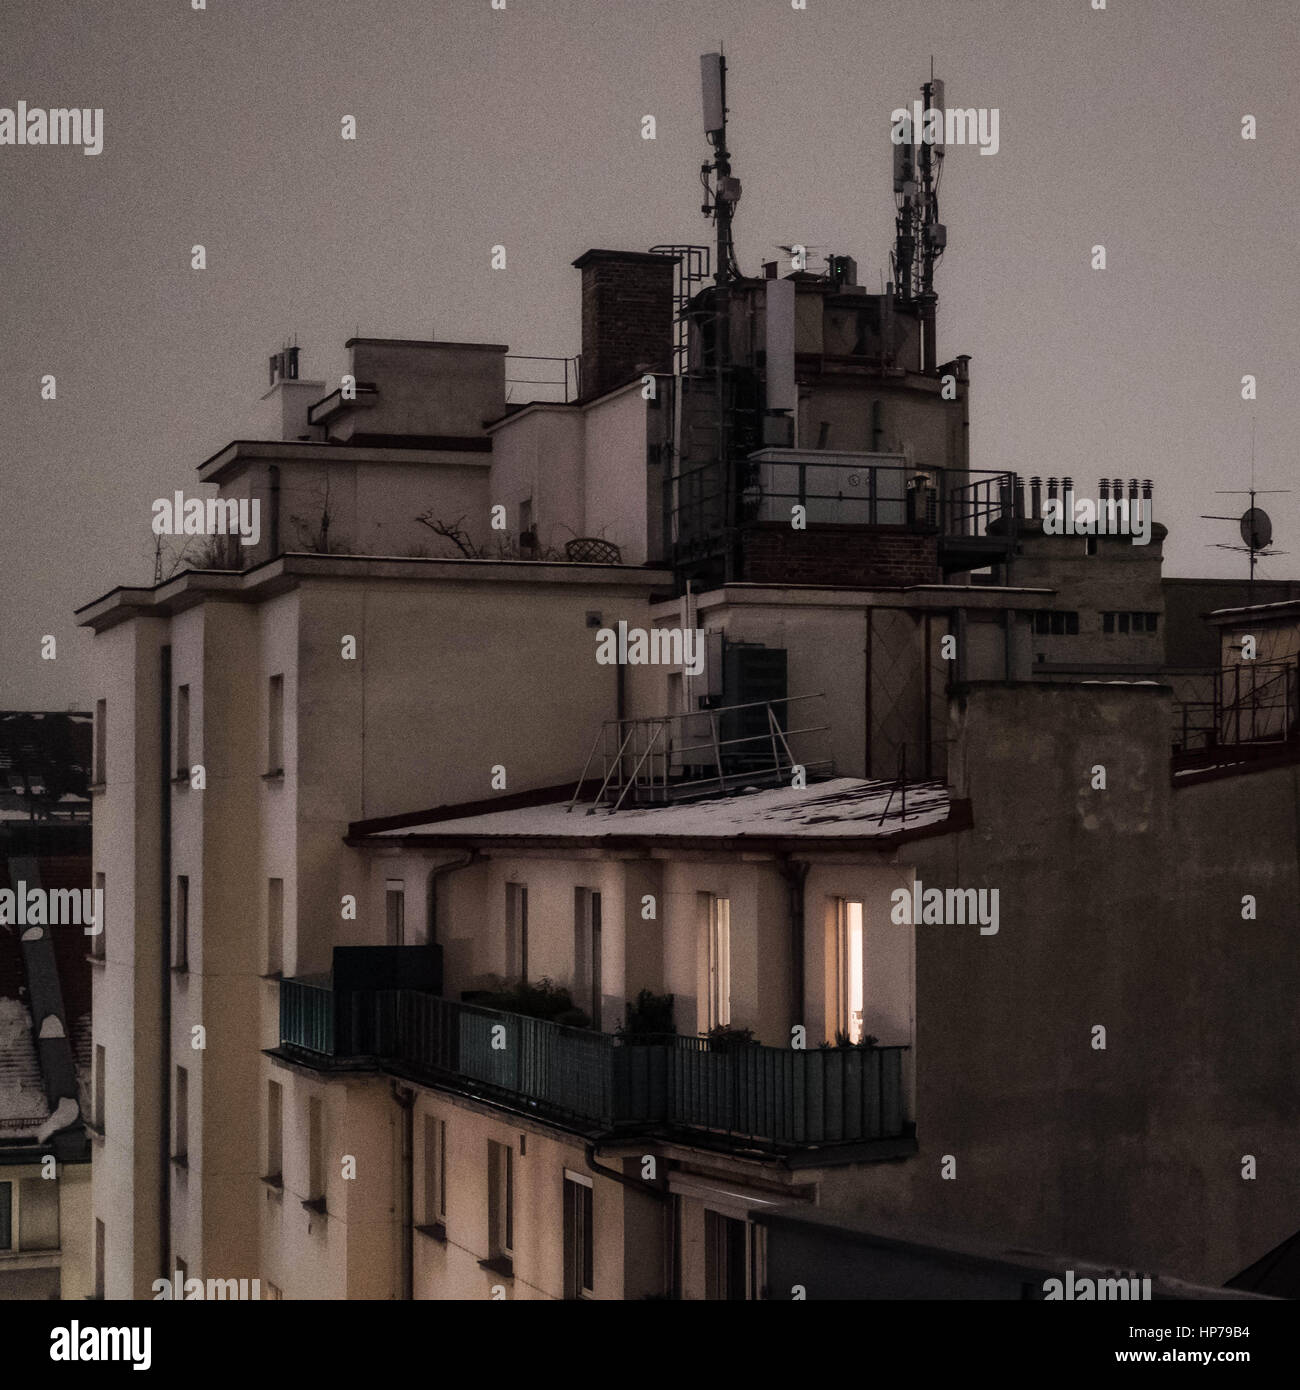 Image en couleur d'une vue sur les toits de Vienne en hiver, la neige visible. Banque D'Images